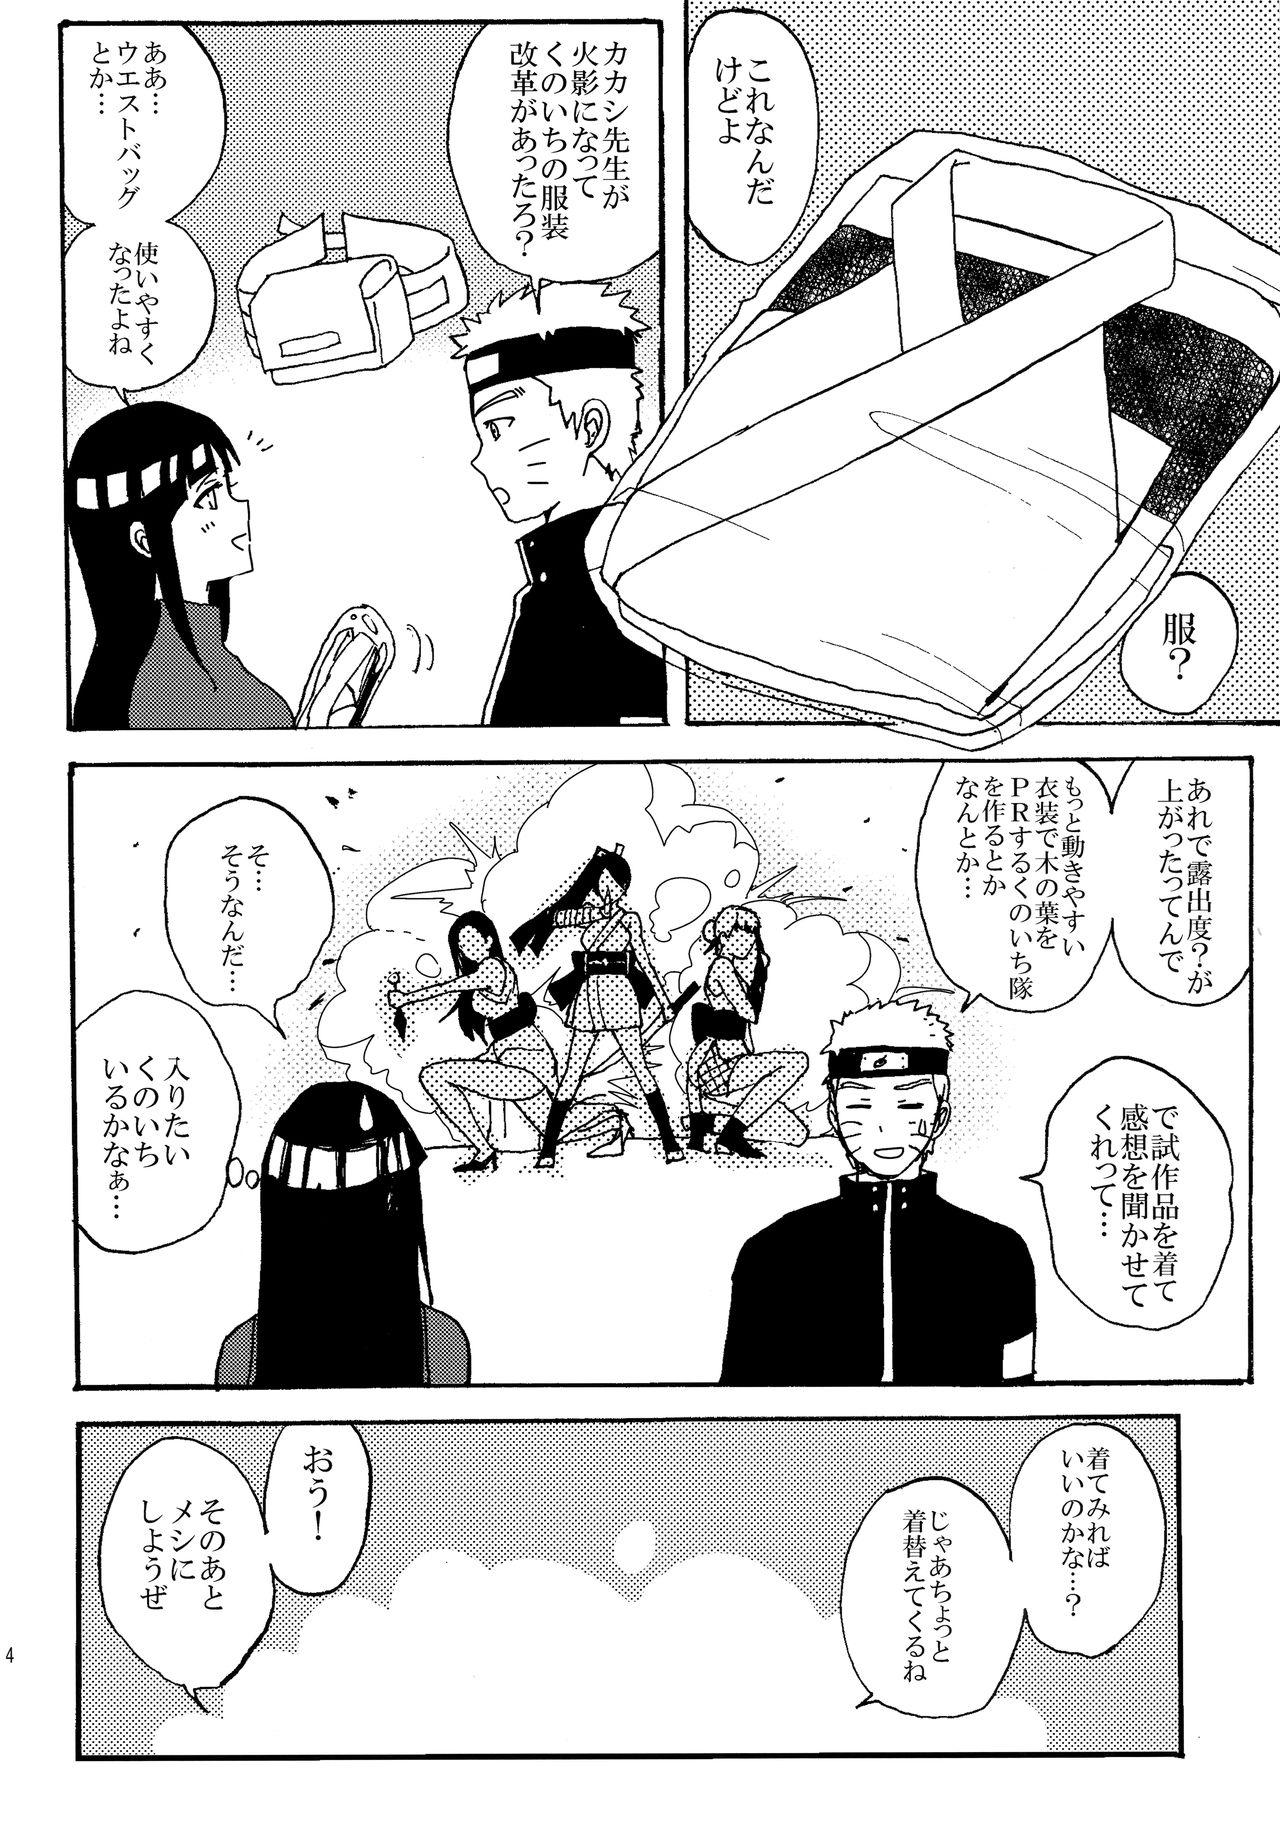 Pussyeating Shinkon Hinata no Kunoichi Cosplay datteba yo! - Naruto Cash - Page 3